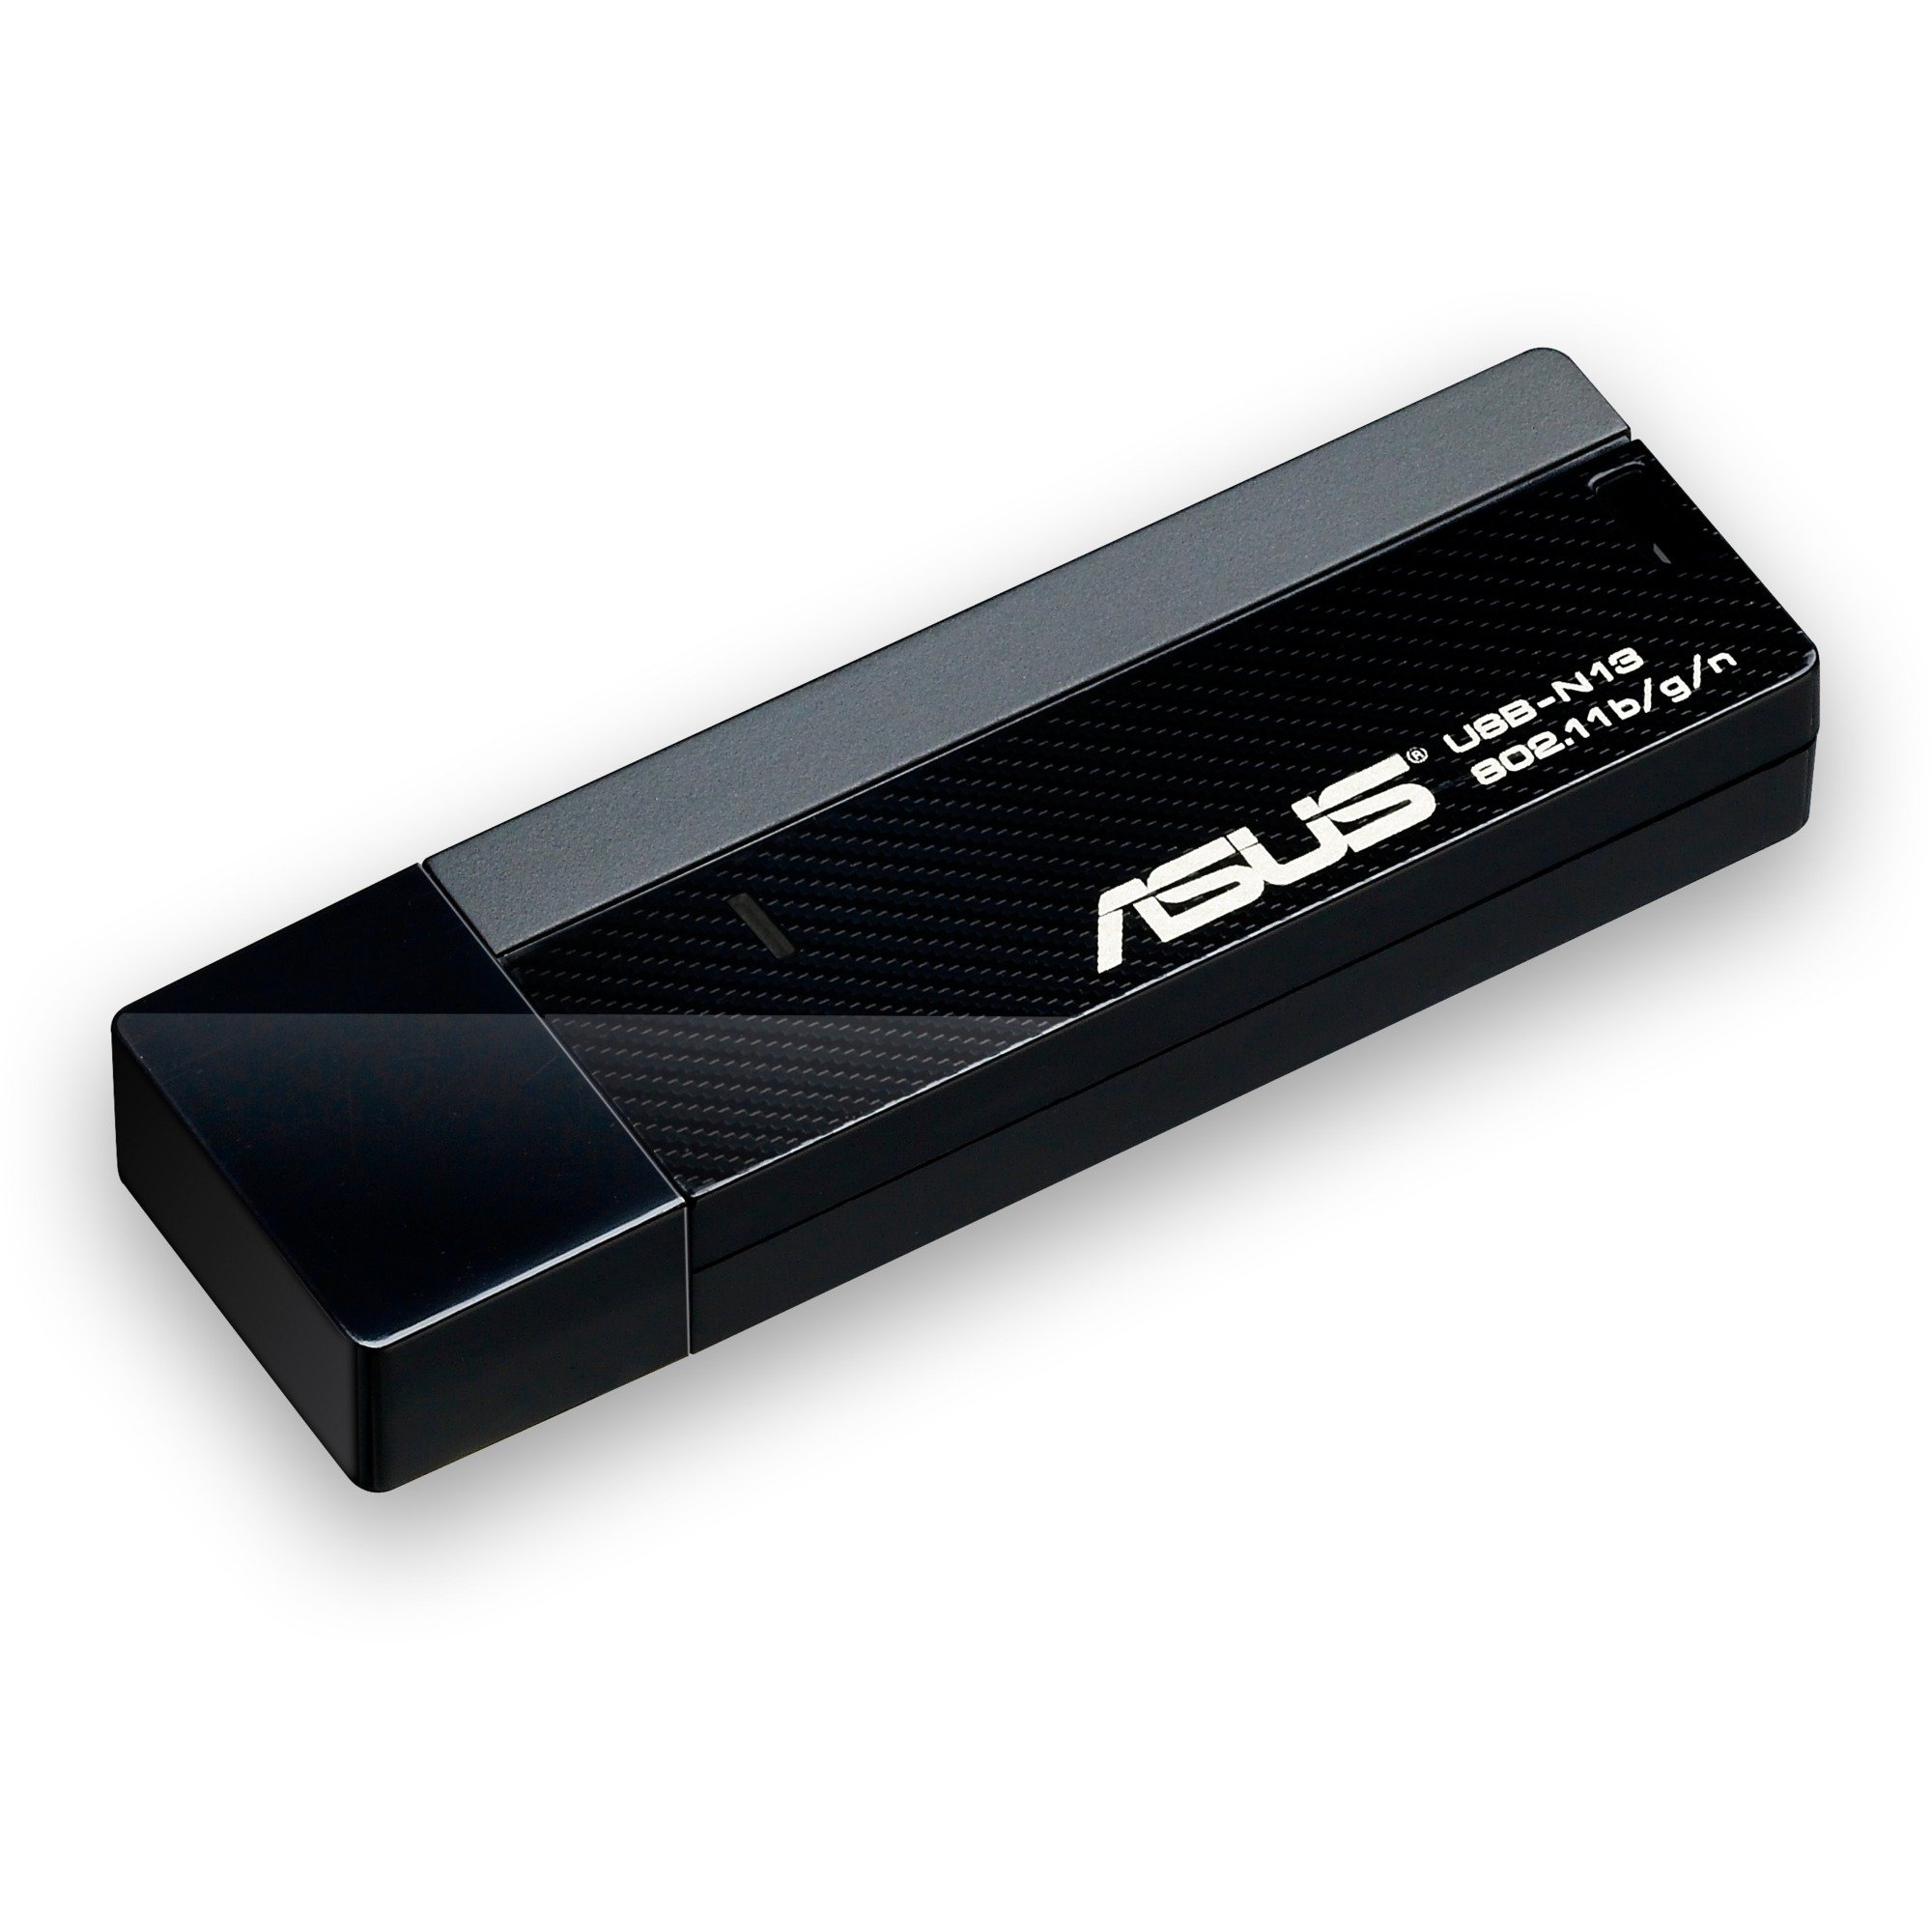 USB-N13 WLAN 300 Mbit/s, Adapter WLAN